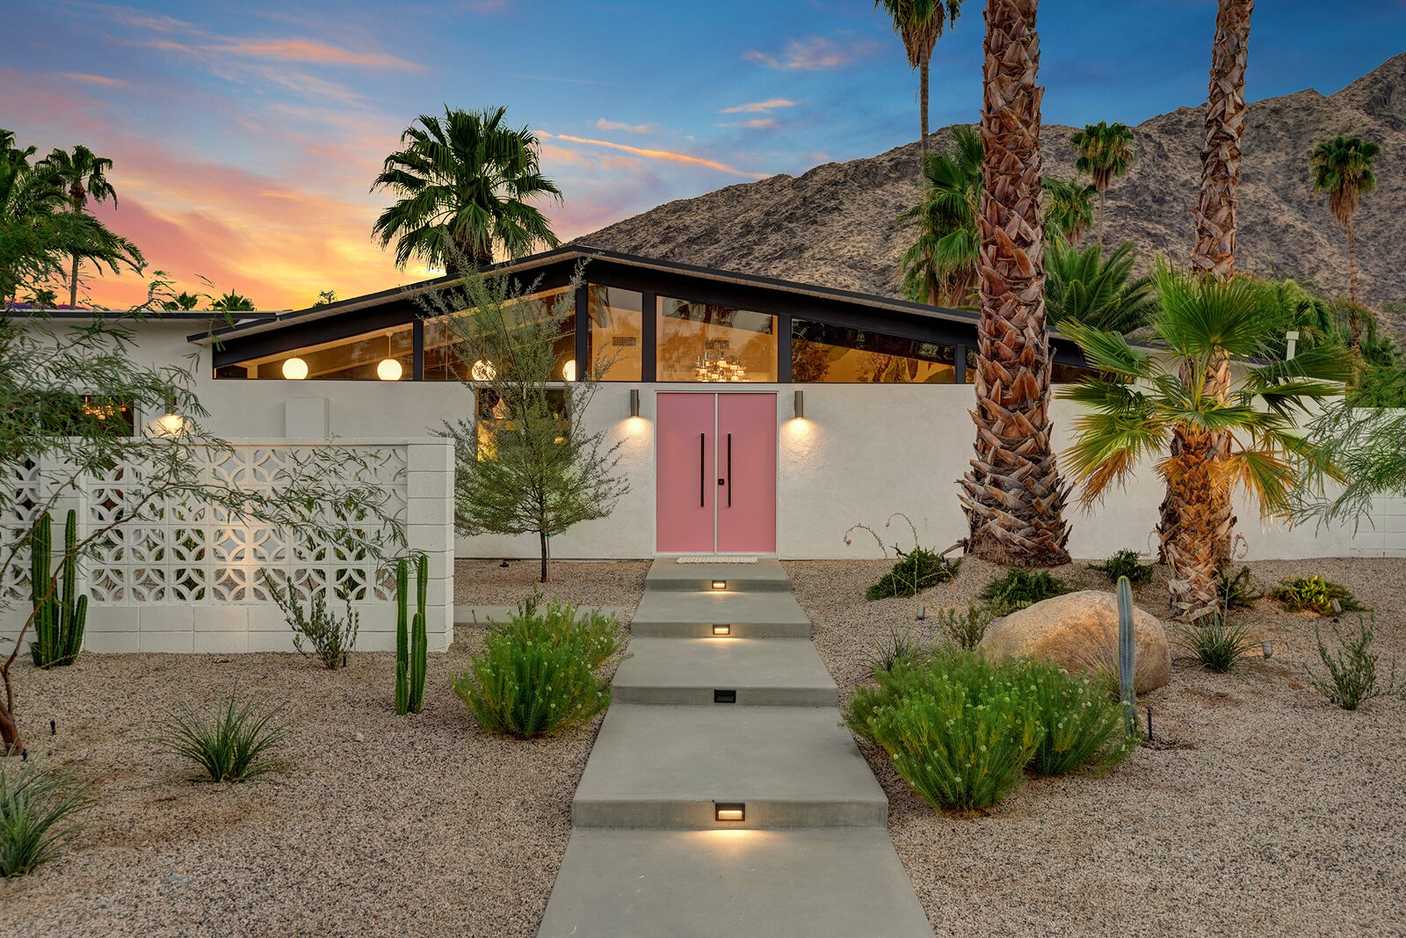 Home Decor Palm Springs